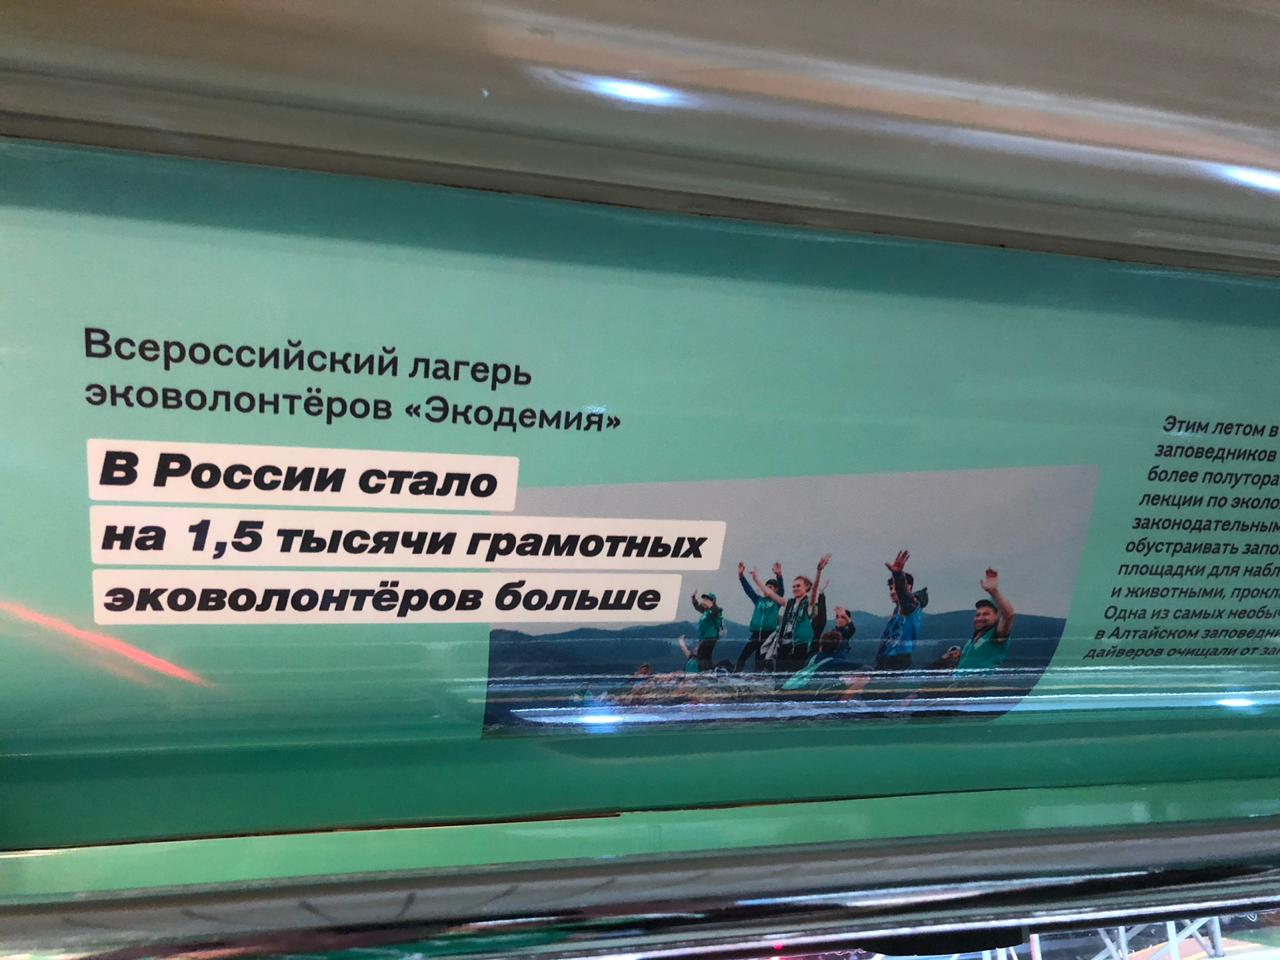 Эковолонтерству посвятили один из вагонов нового тематического поезда метро - фото 1